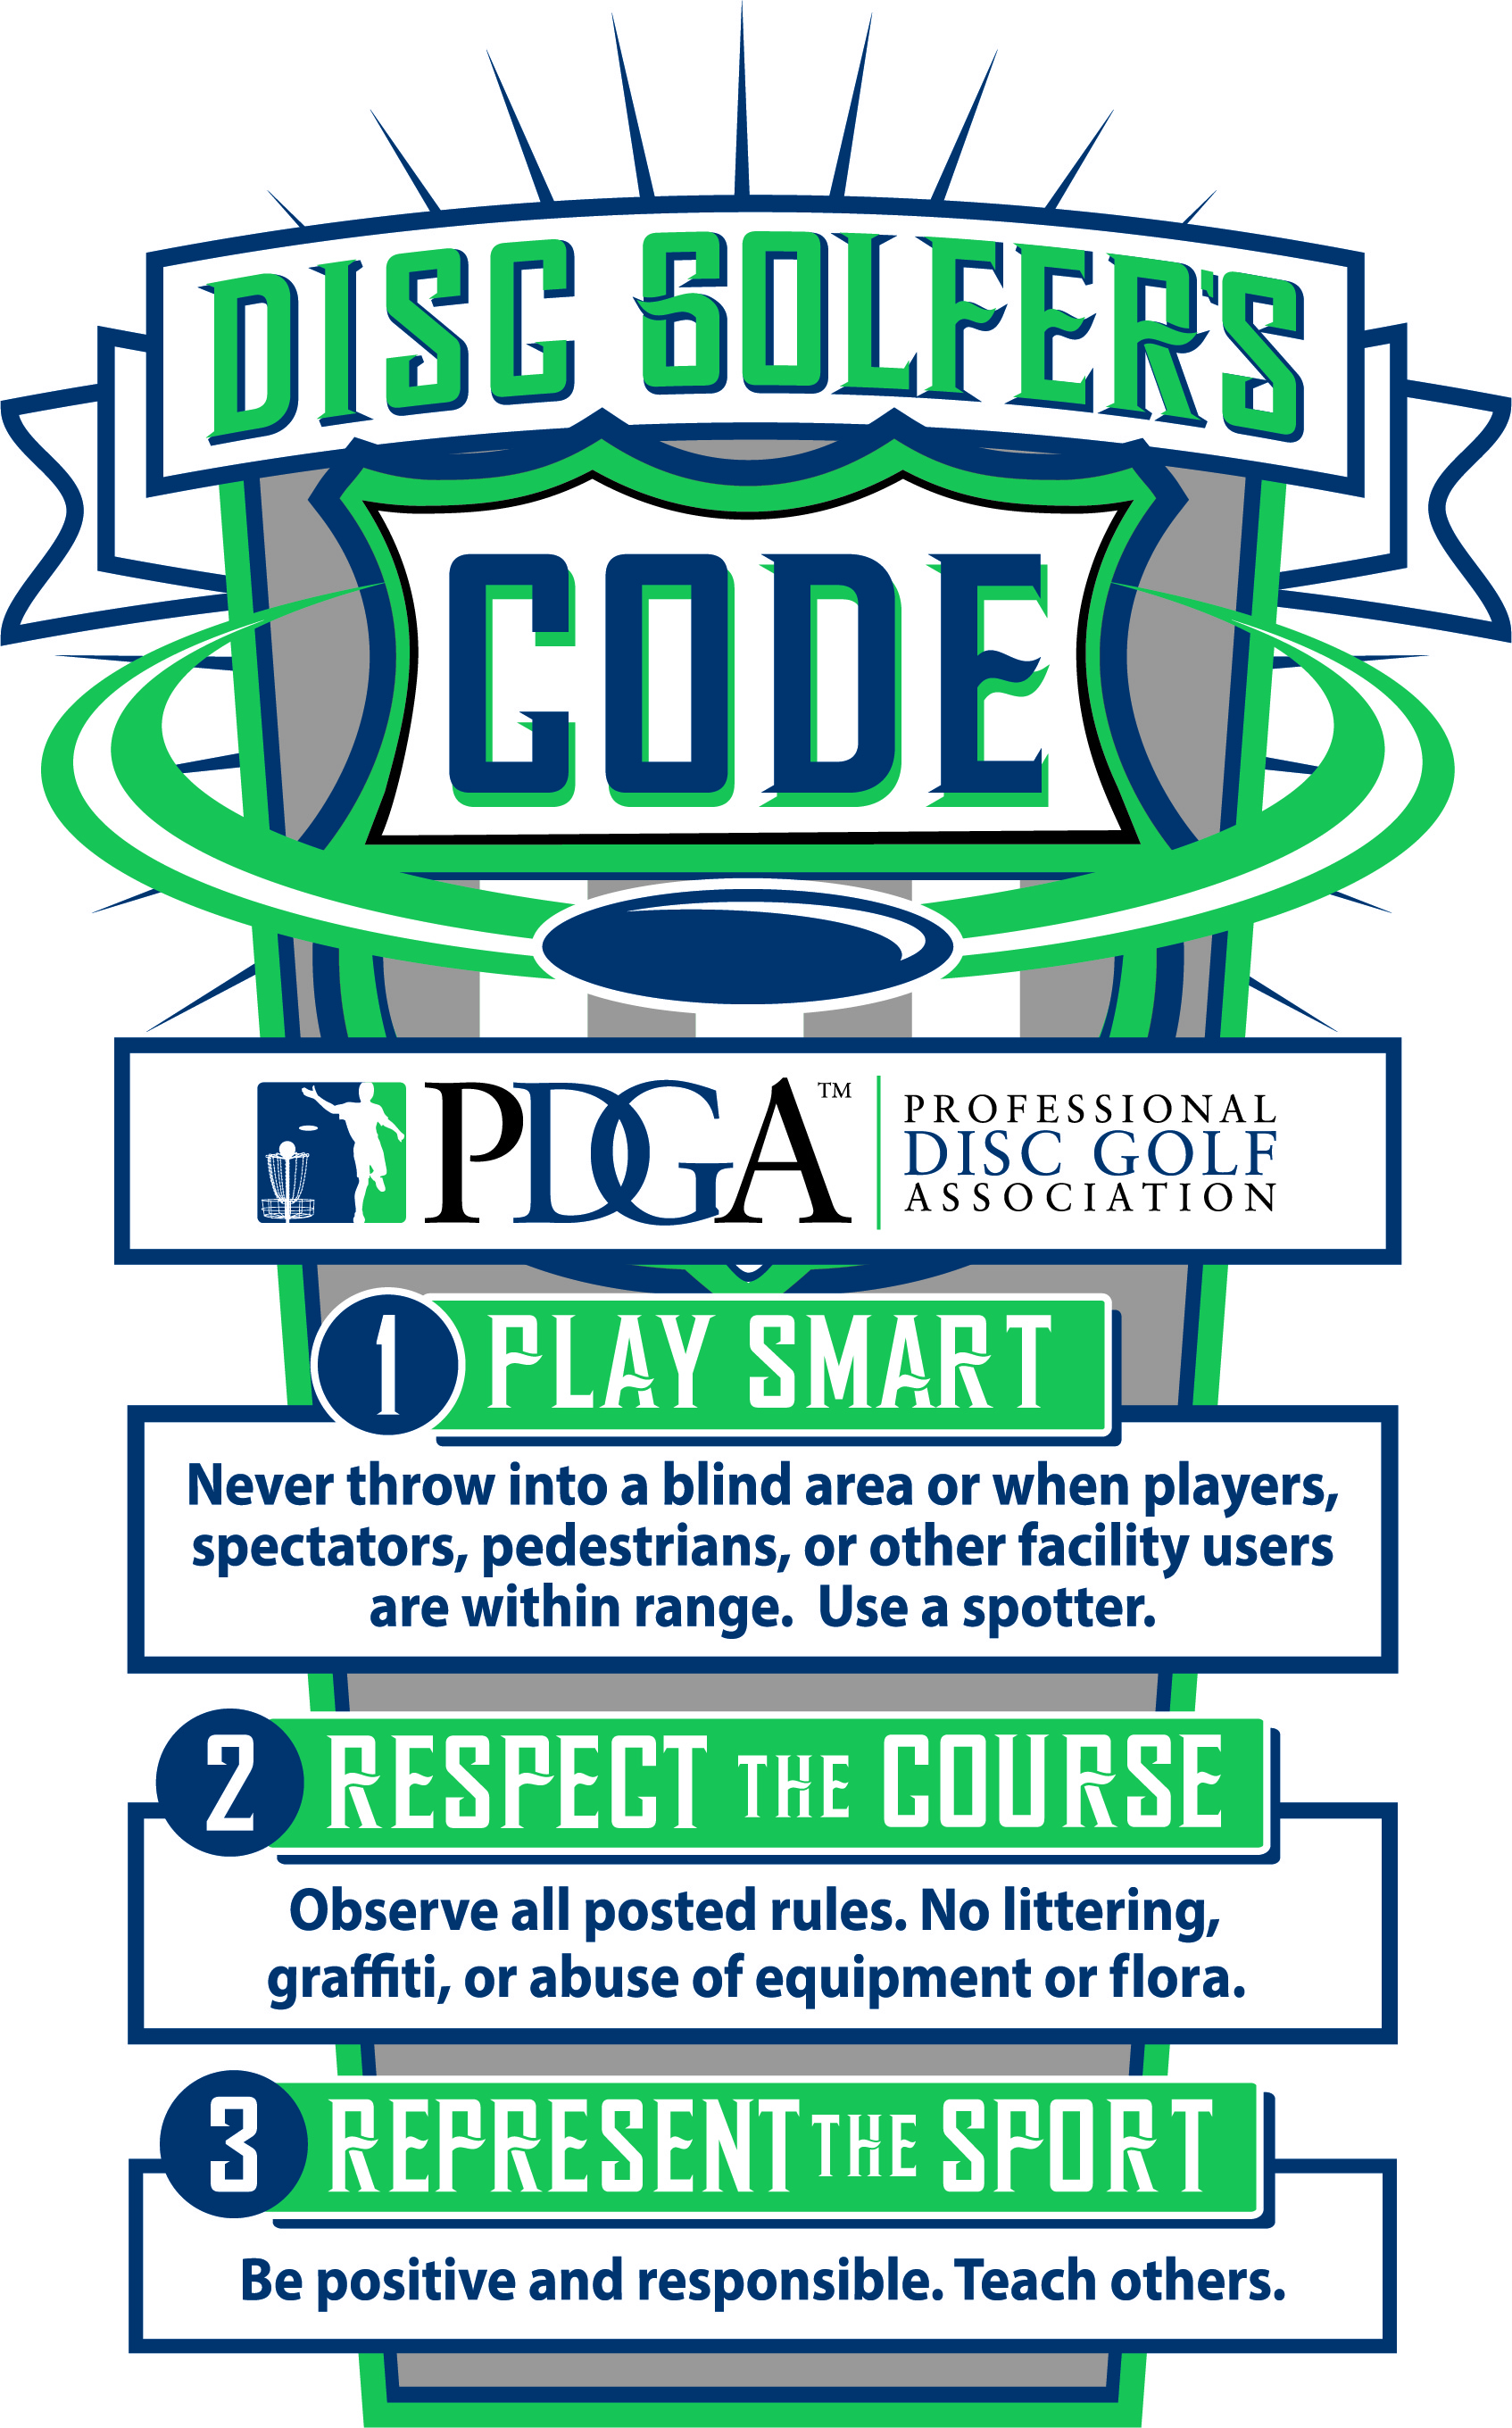 disc-golfers-code-en-us.jpg